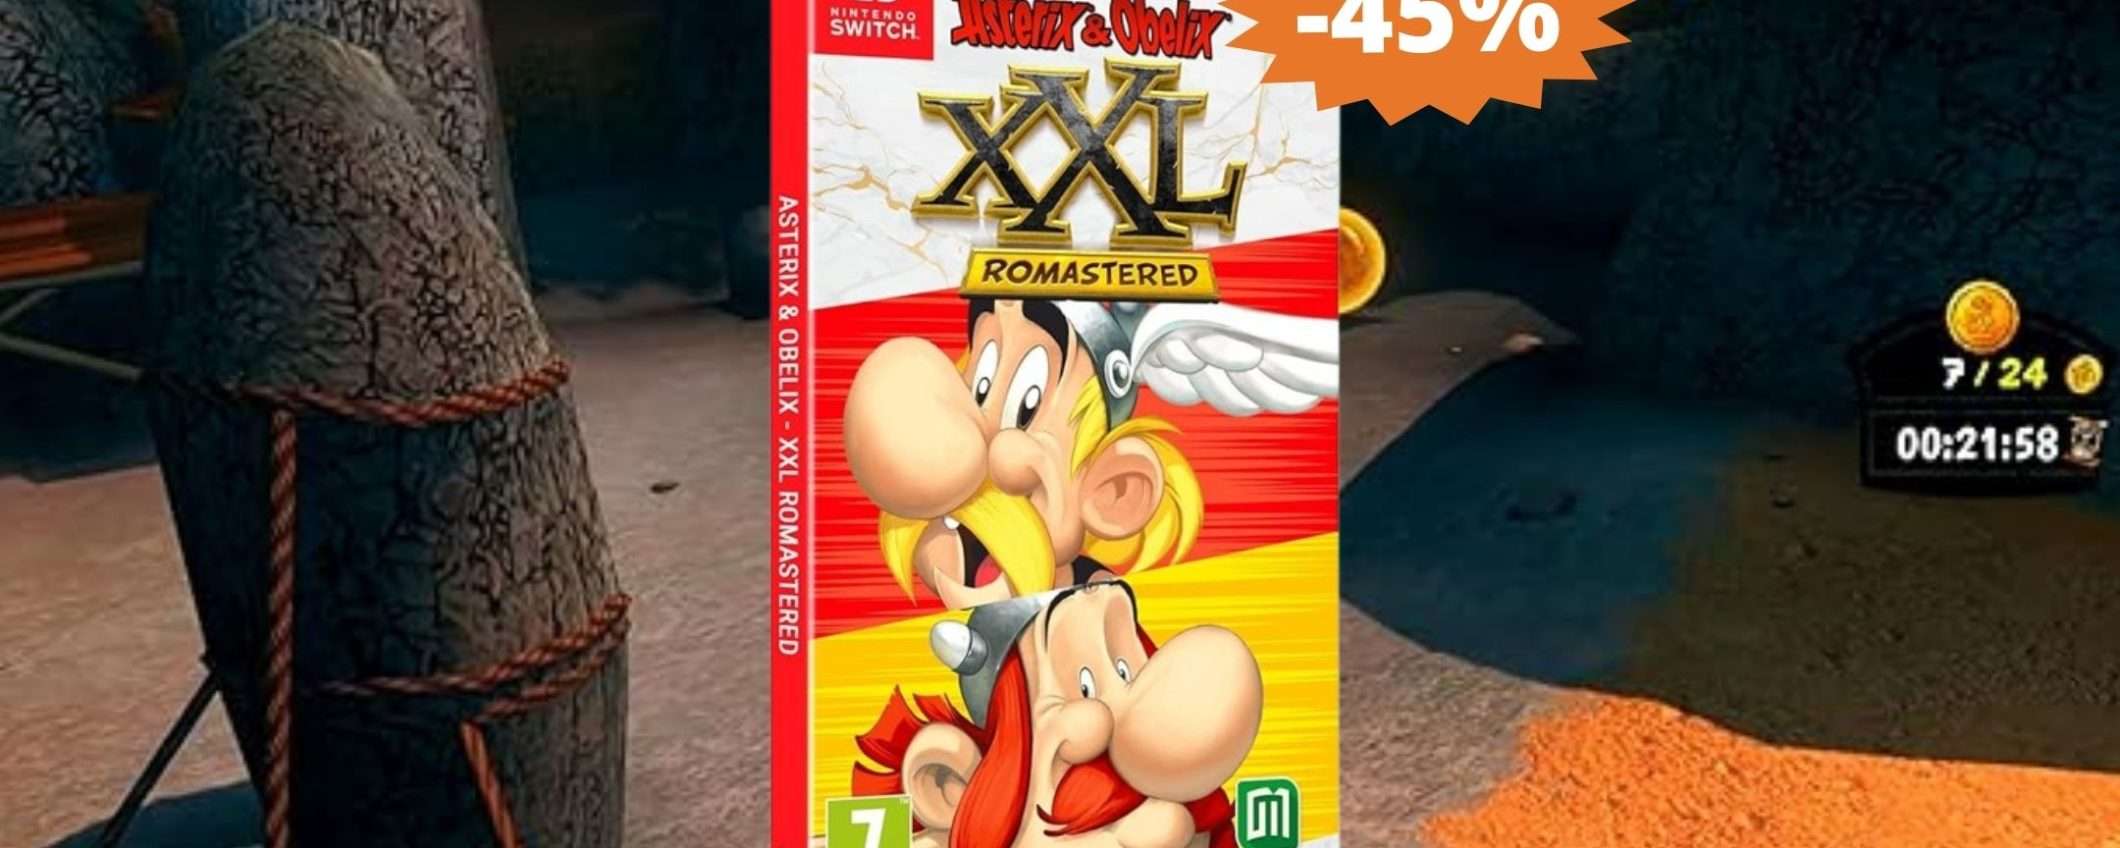 Asterix XXL Romastered per Switch: sconto EPICO del 45%